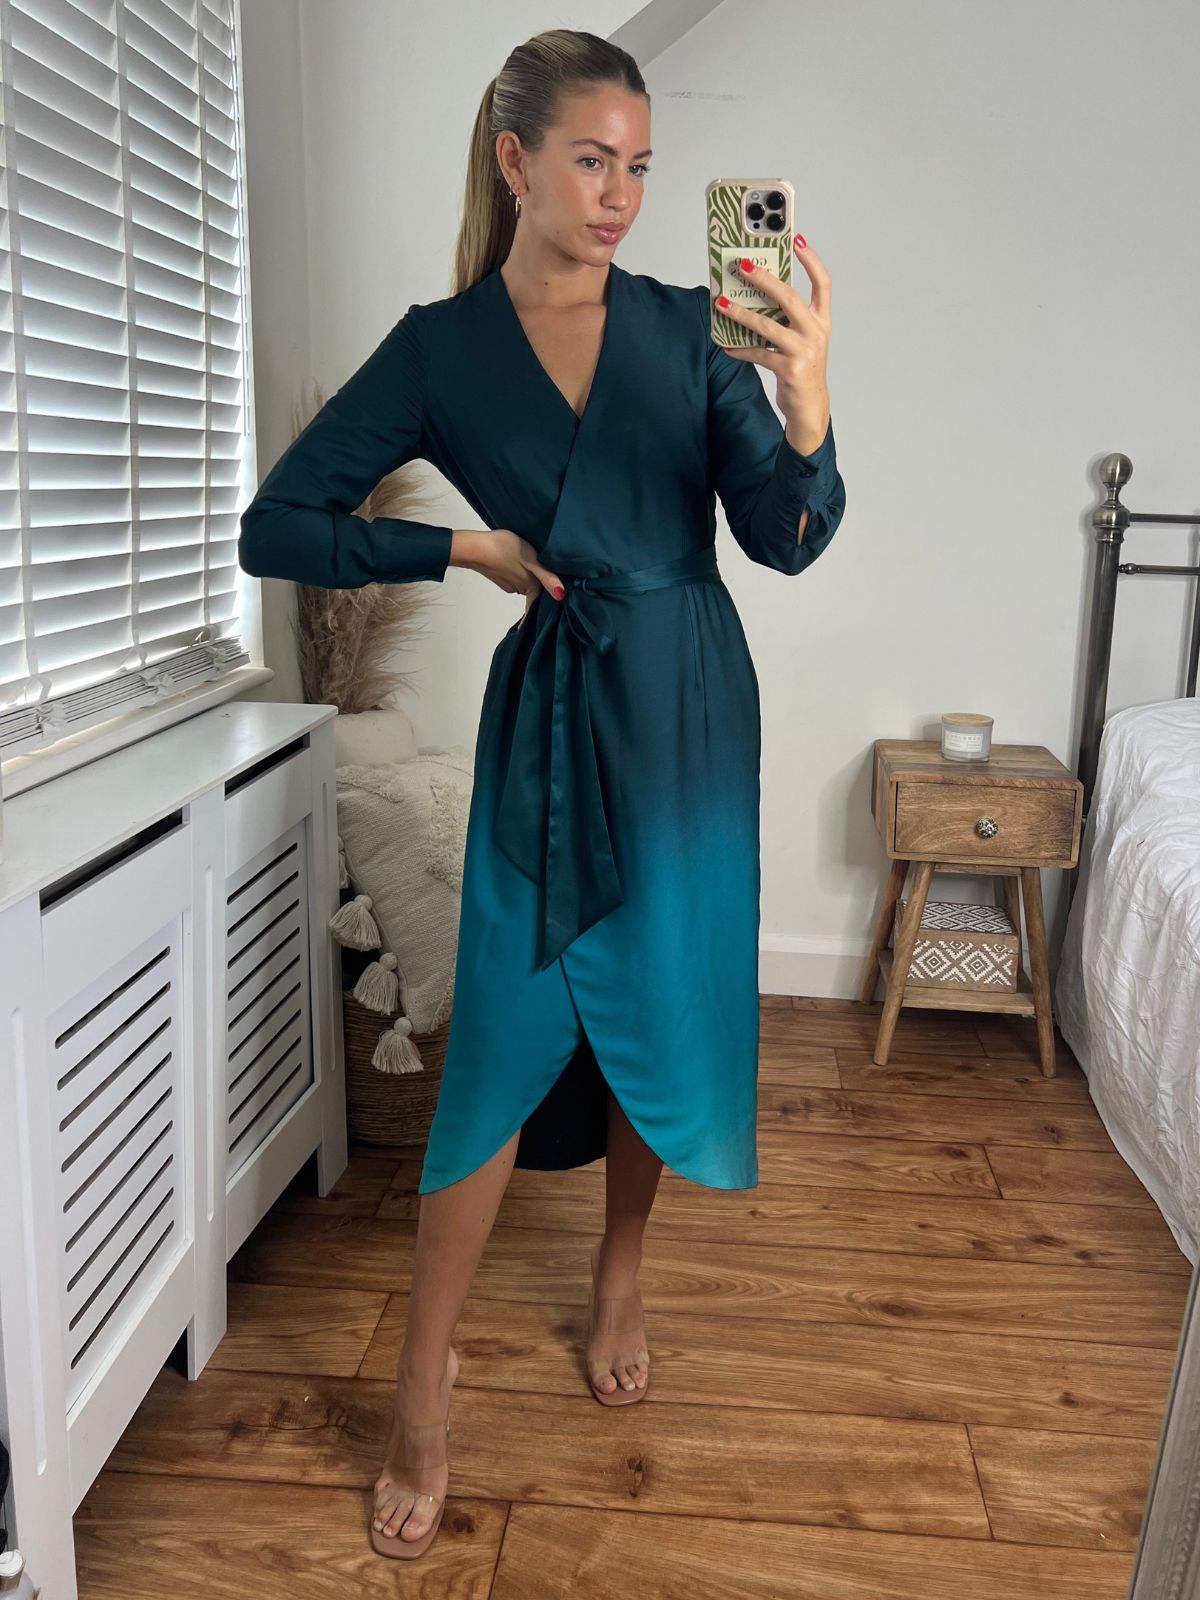 Green Ombre Dress | Fergie Reversible 2 in 1 Wrap Midi Dress